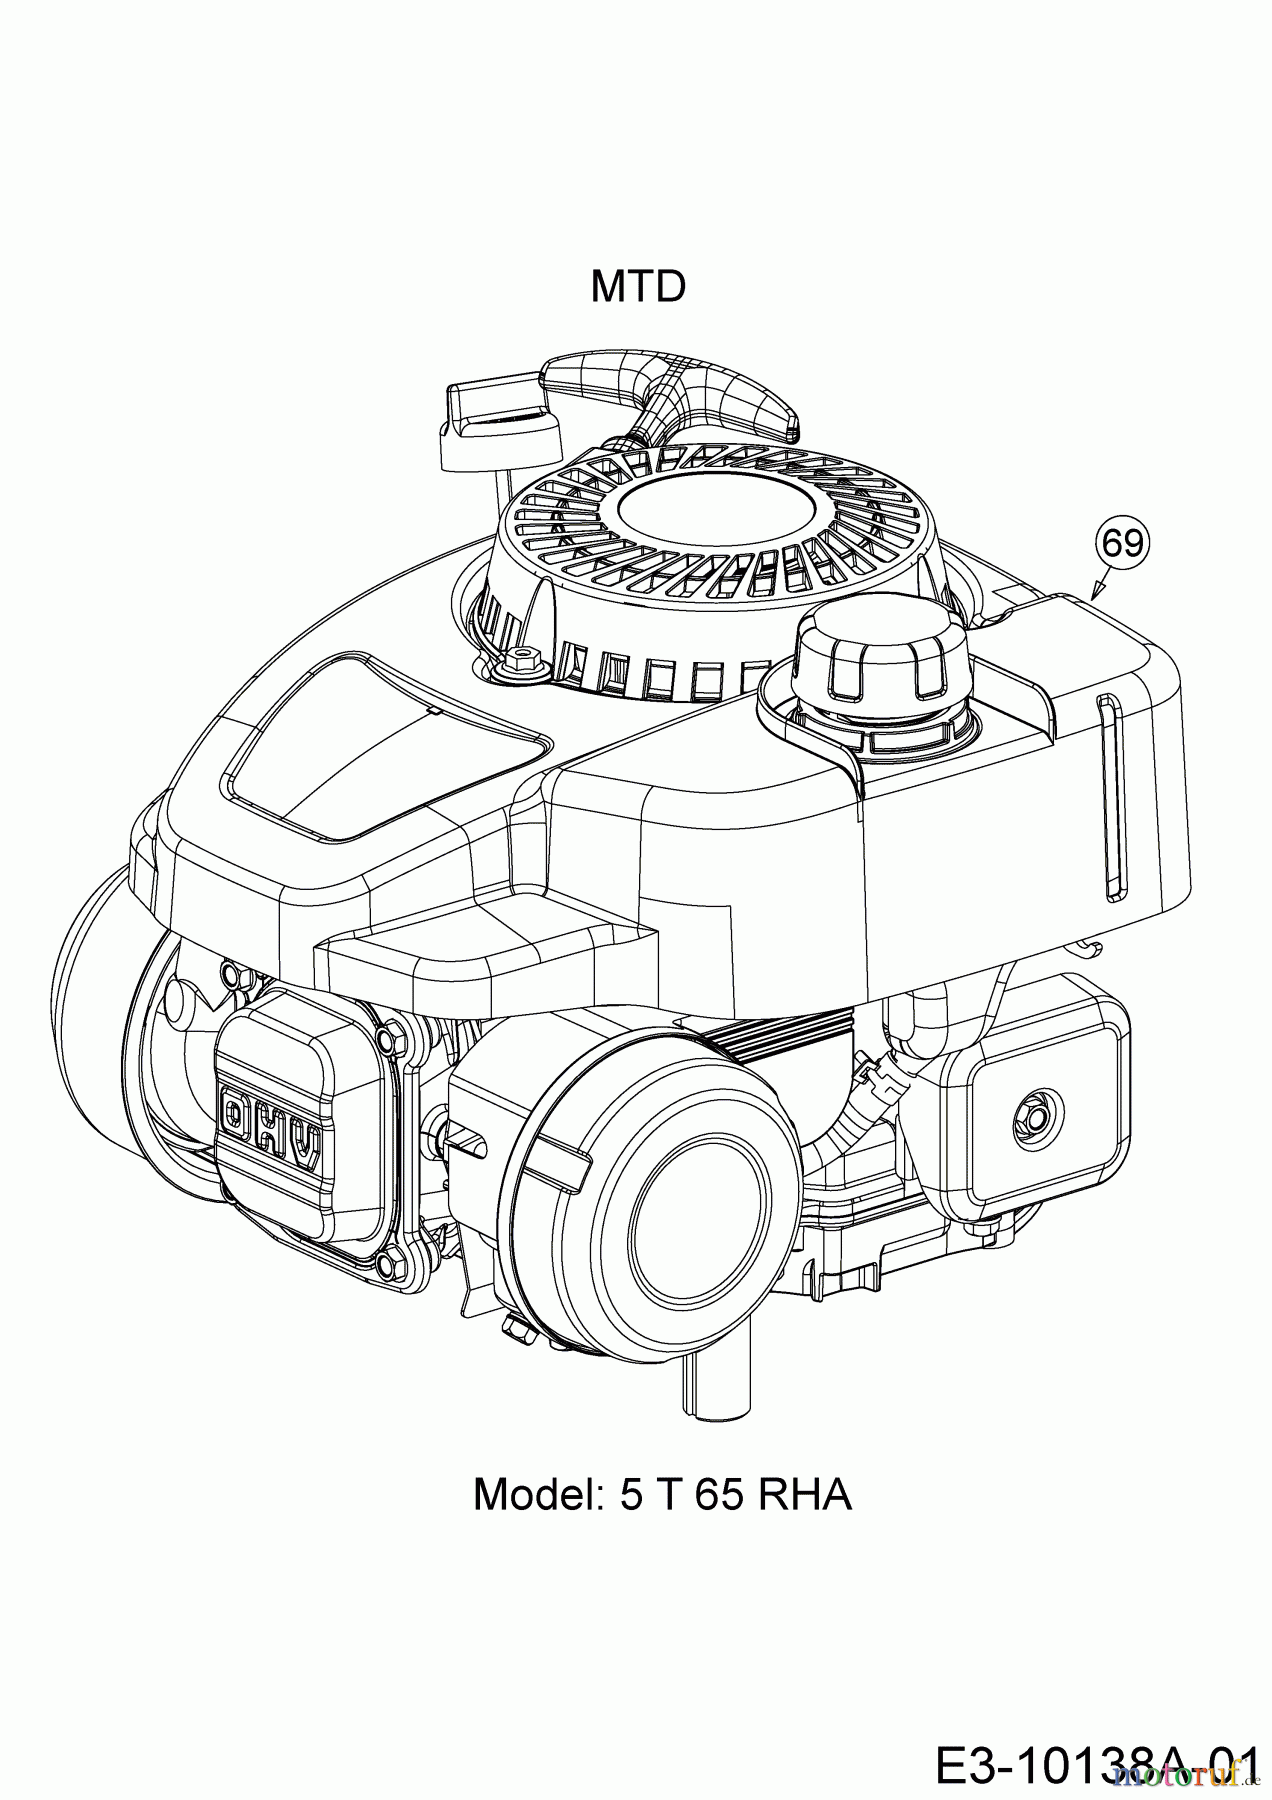  Wolf-Garten Motormäher mit Antrieb A 4600 A 12A-TOSC650 (2020) Motor MTD